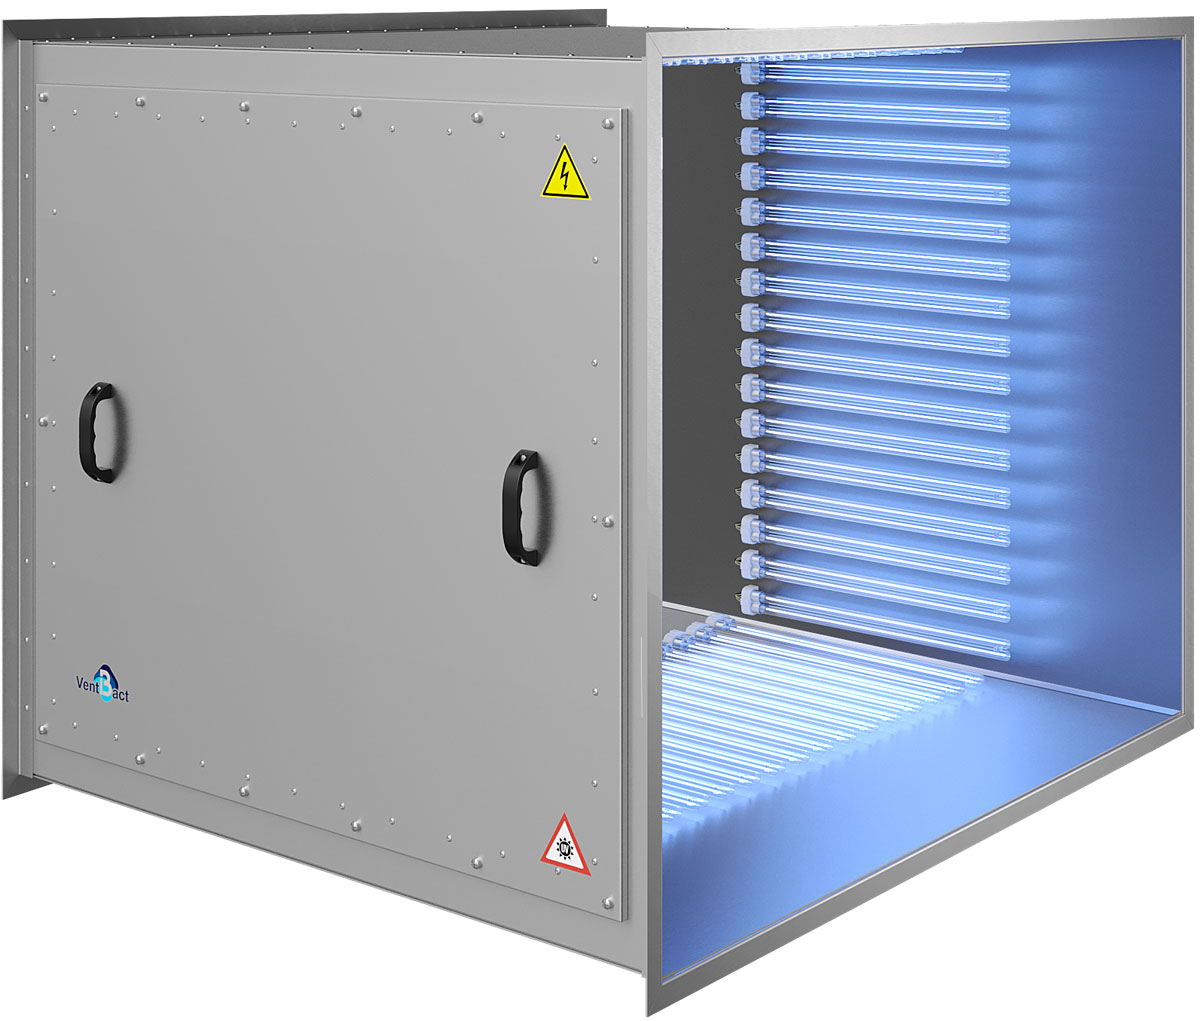 Бактерицидная секция Vent Bact VB 6300 для обеззараживания воздуха в системах вентиляции и кондиционирования